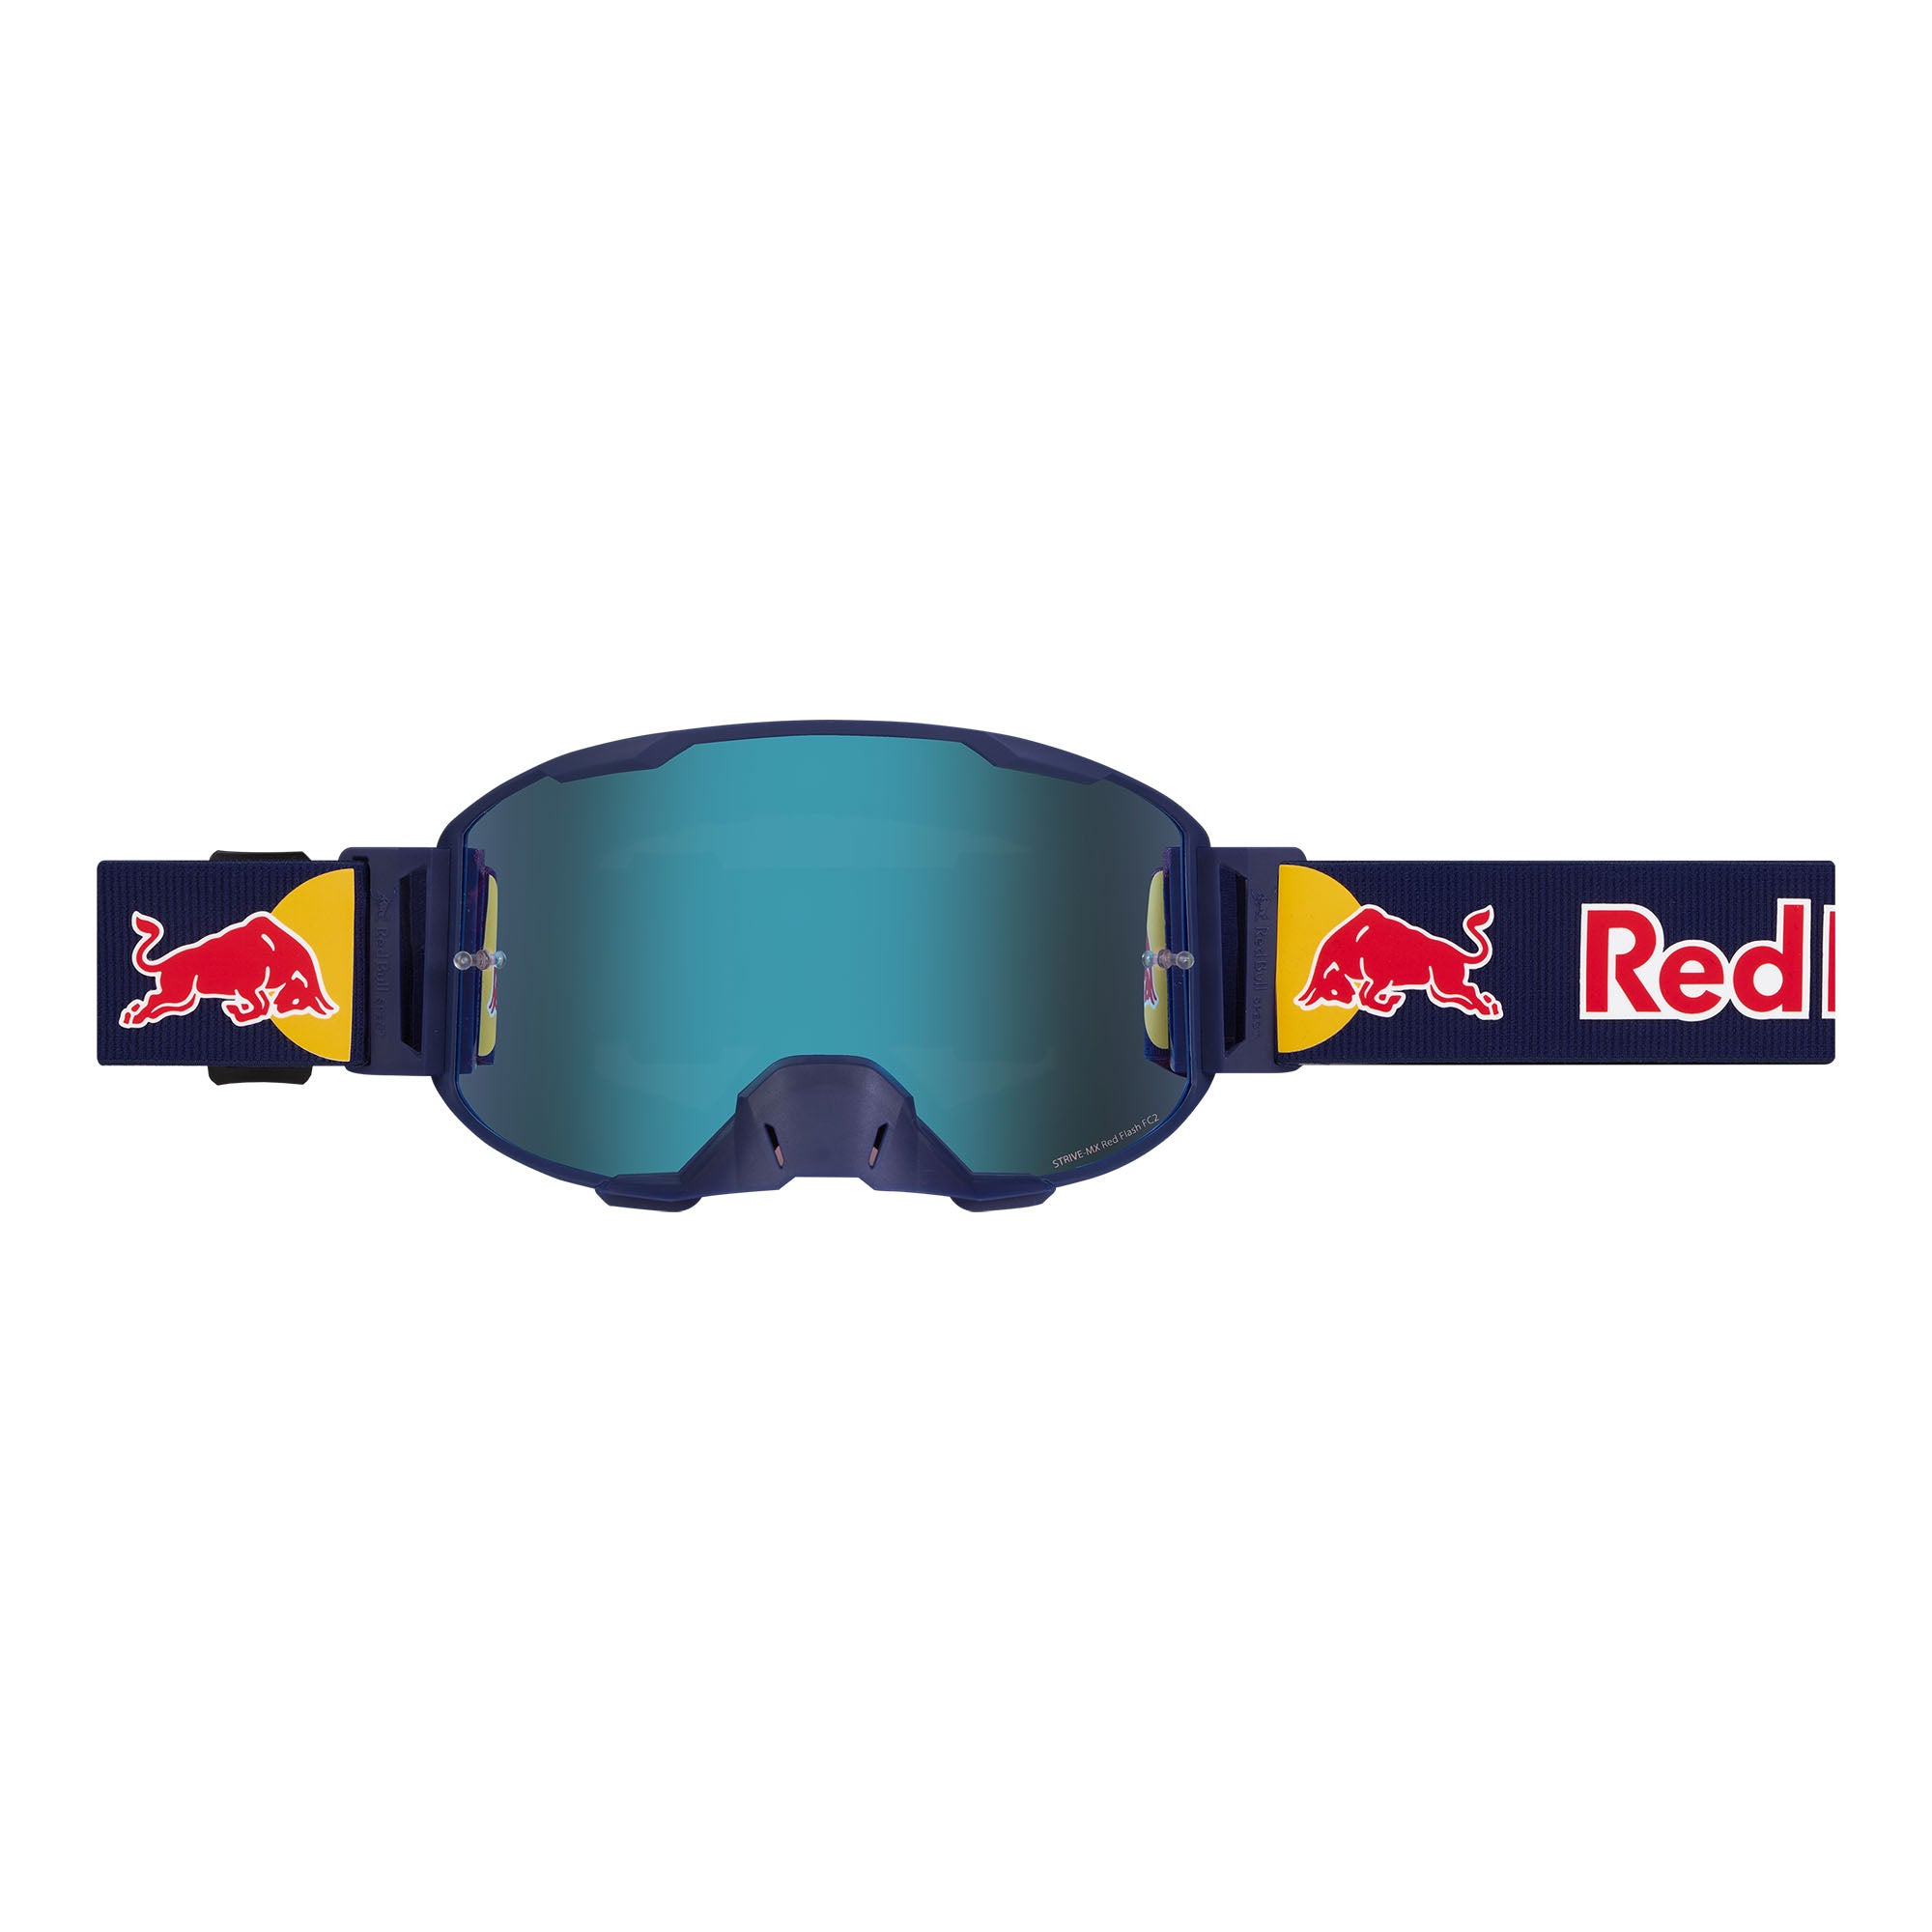 Masque de ski Red Bull - CHUTE - 04 - Cat.3 + Cat.2 - Masques Red